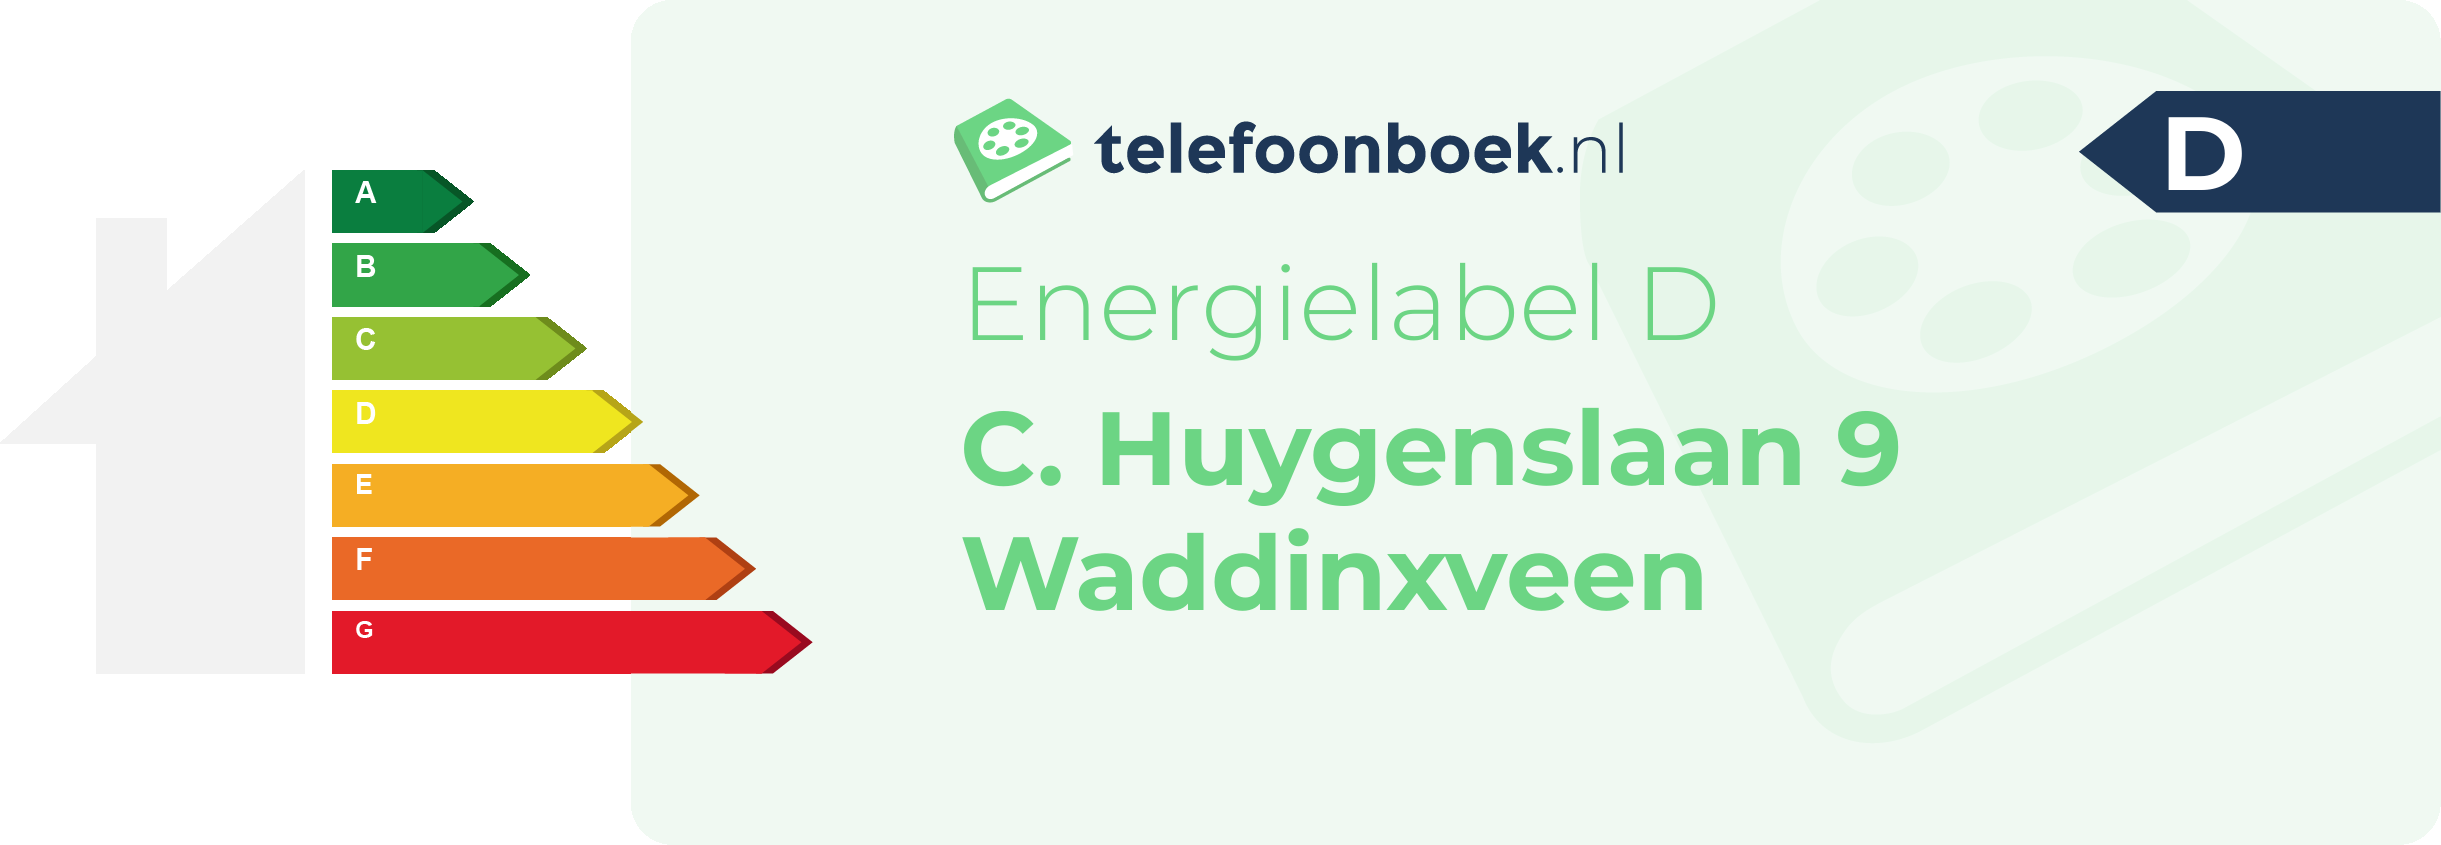 Energielabel C. Huygenslaan 9 Waddinxveen